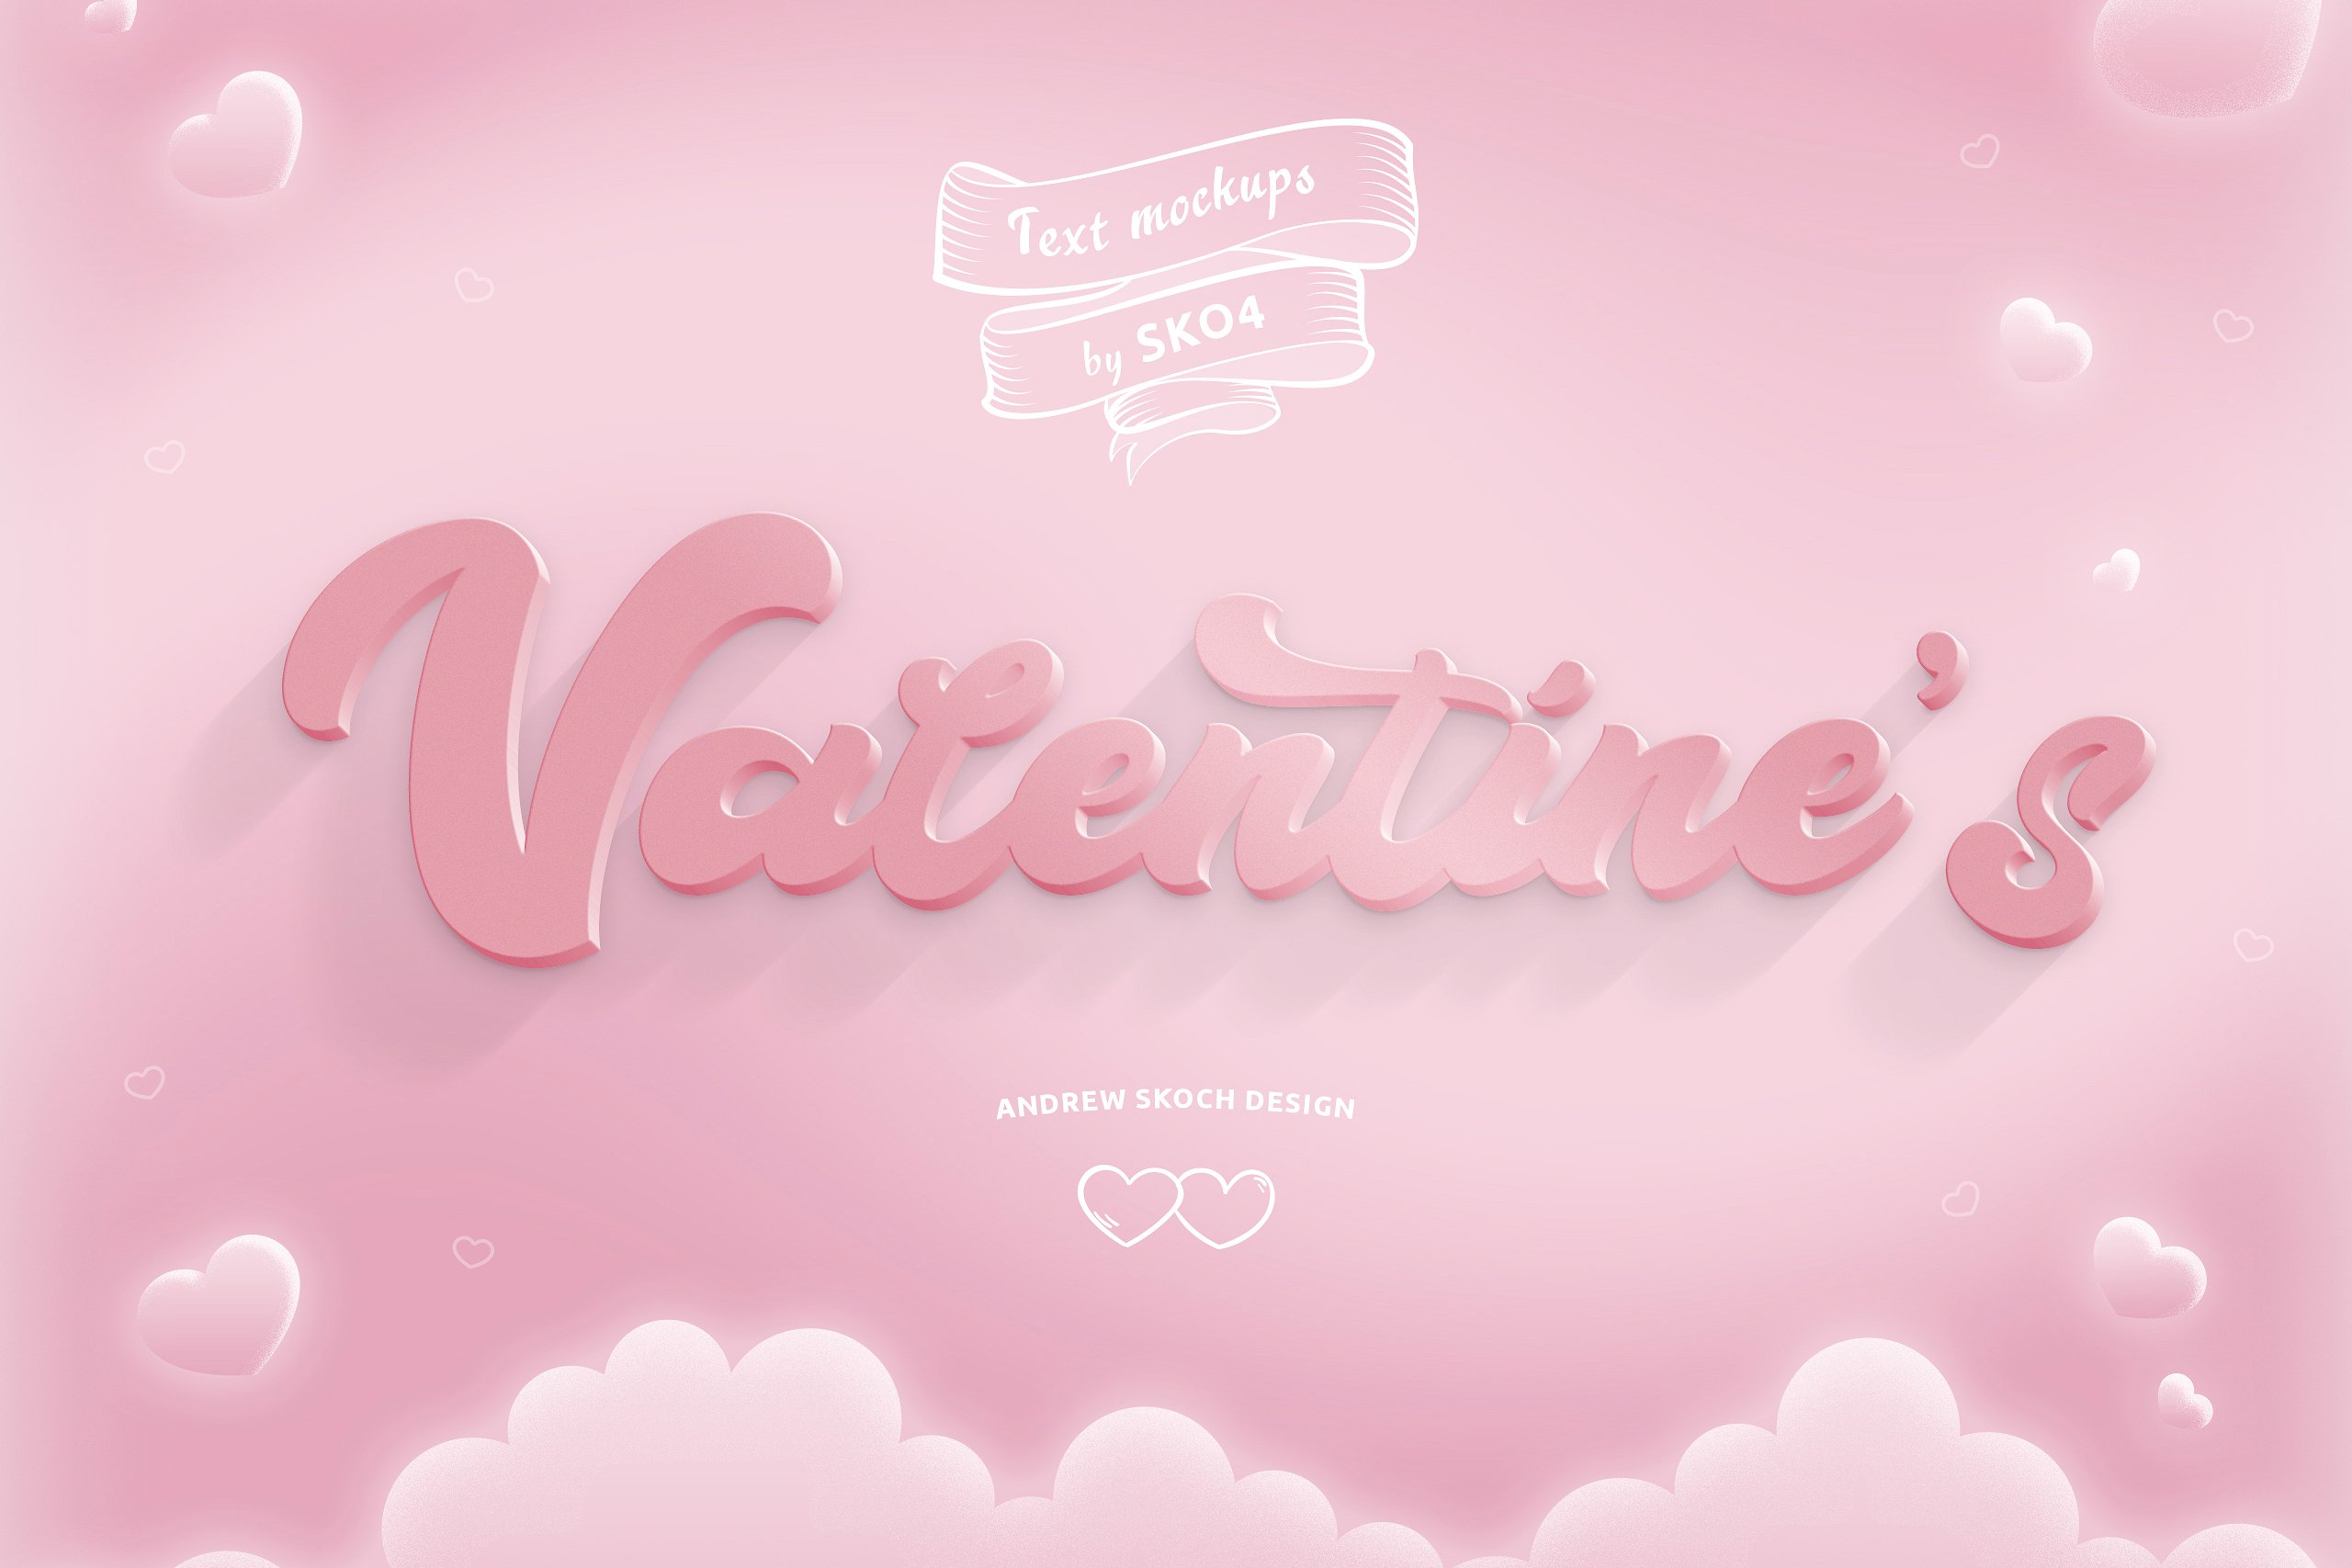 80年代复古未来感的情人节文本图层样式 80’s Retro Futuristic Valentine’s Day Text Layer Style插图3